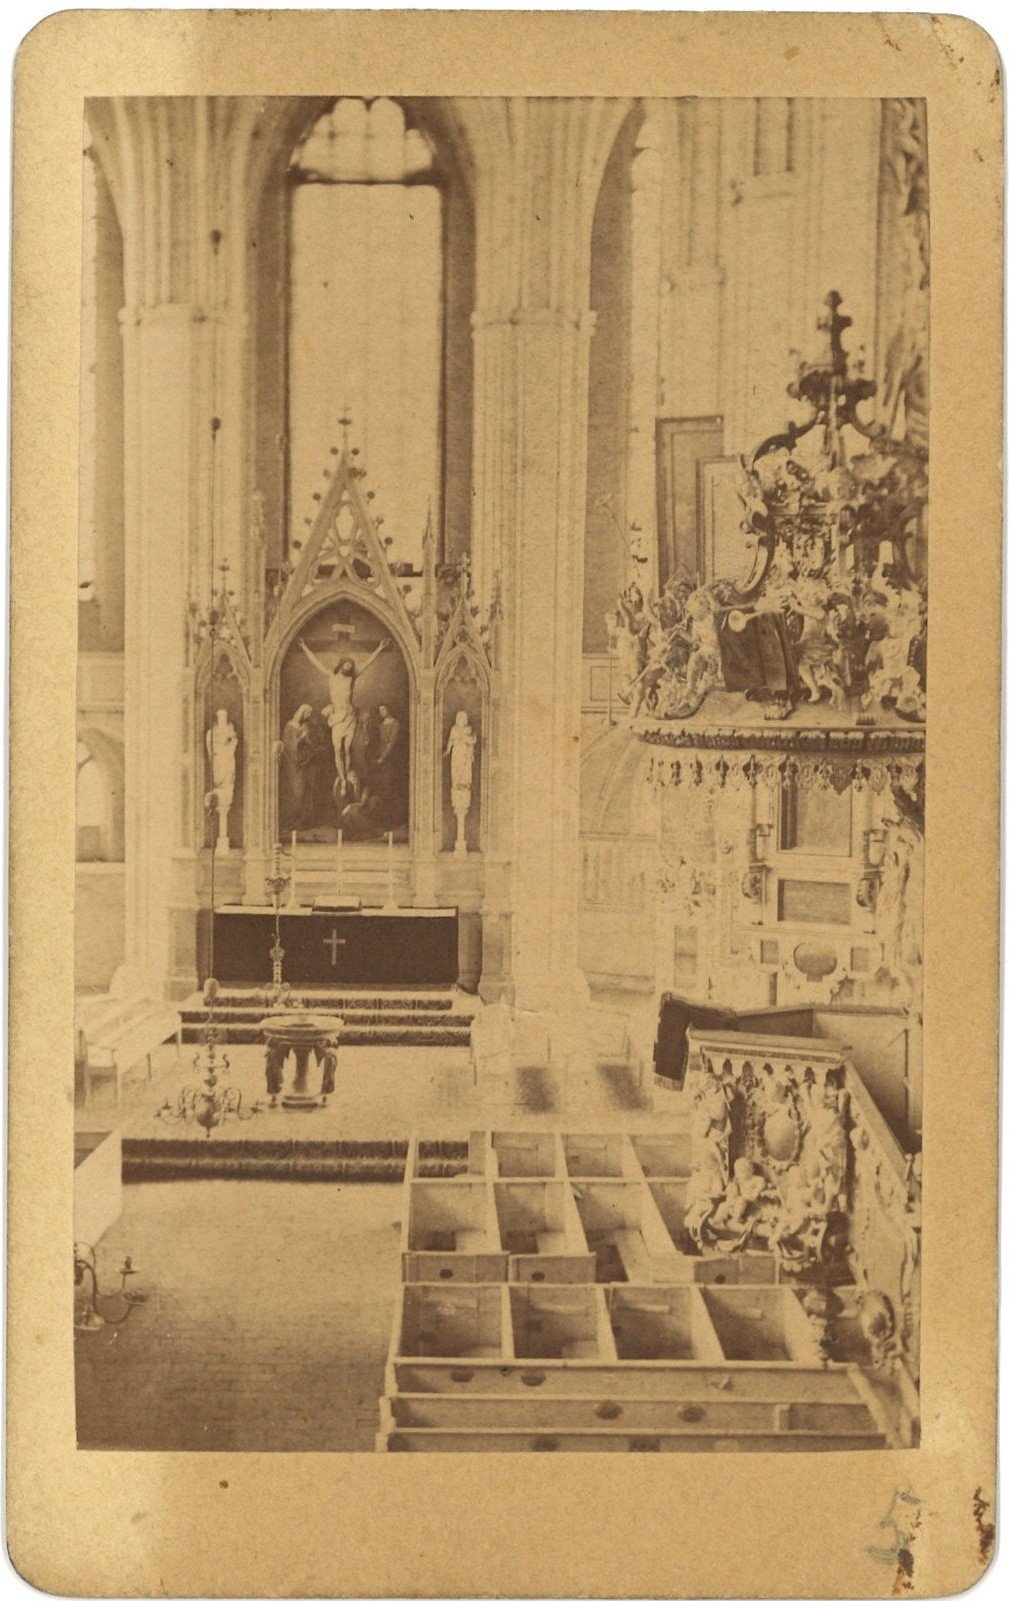 Königsberg/Neumark / Chojna: Marienkirche, Inneres, Blick zum Altar (Landesgeschichtliche Vereinigung für die Mark Brandenburg e.V., Archiv CC BY)